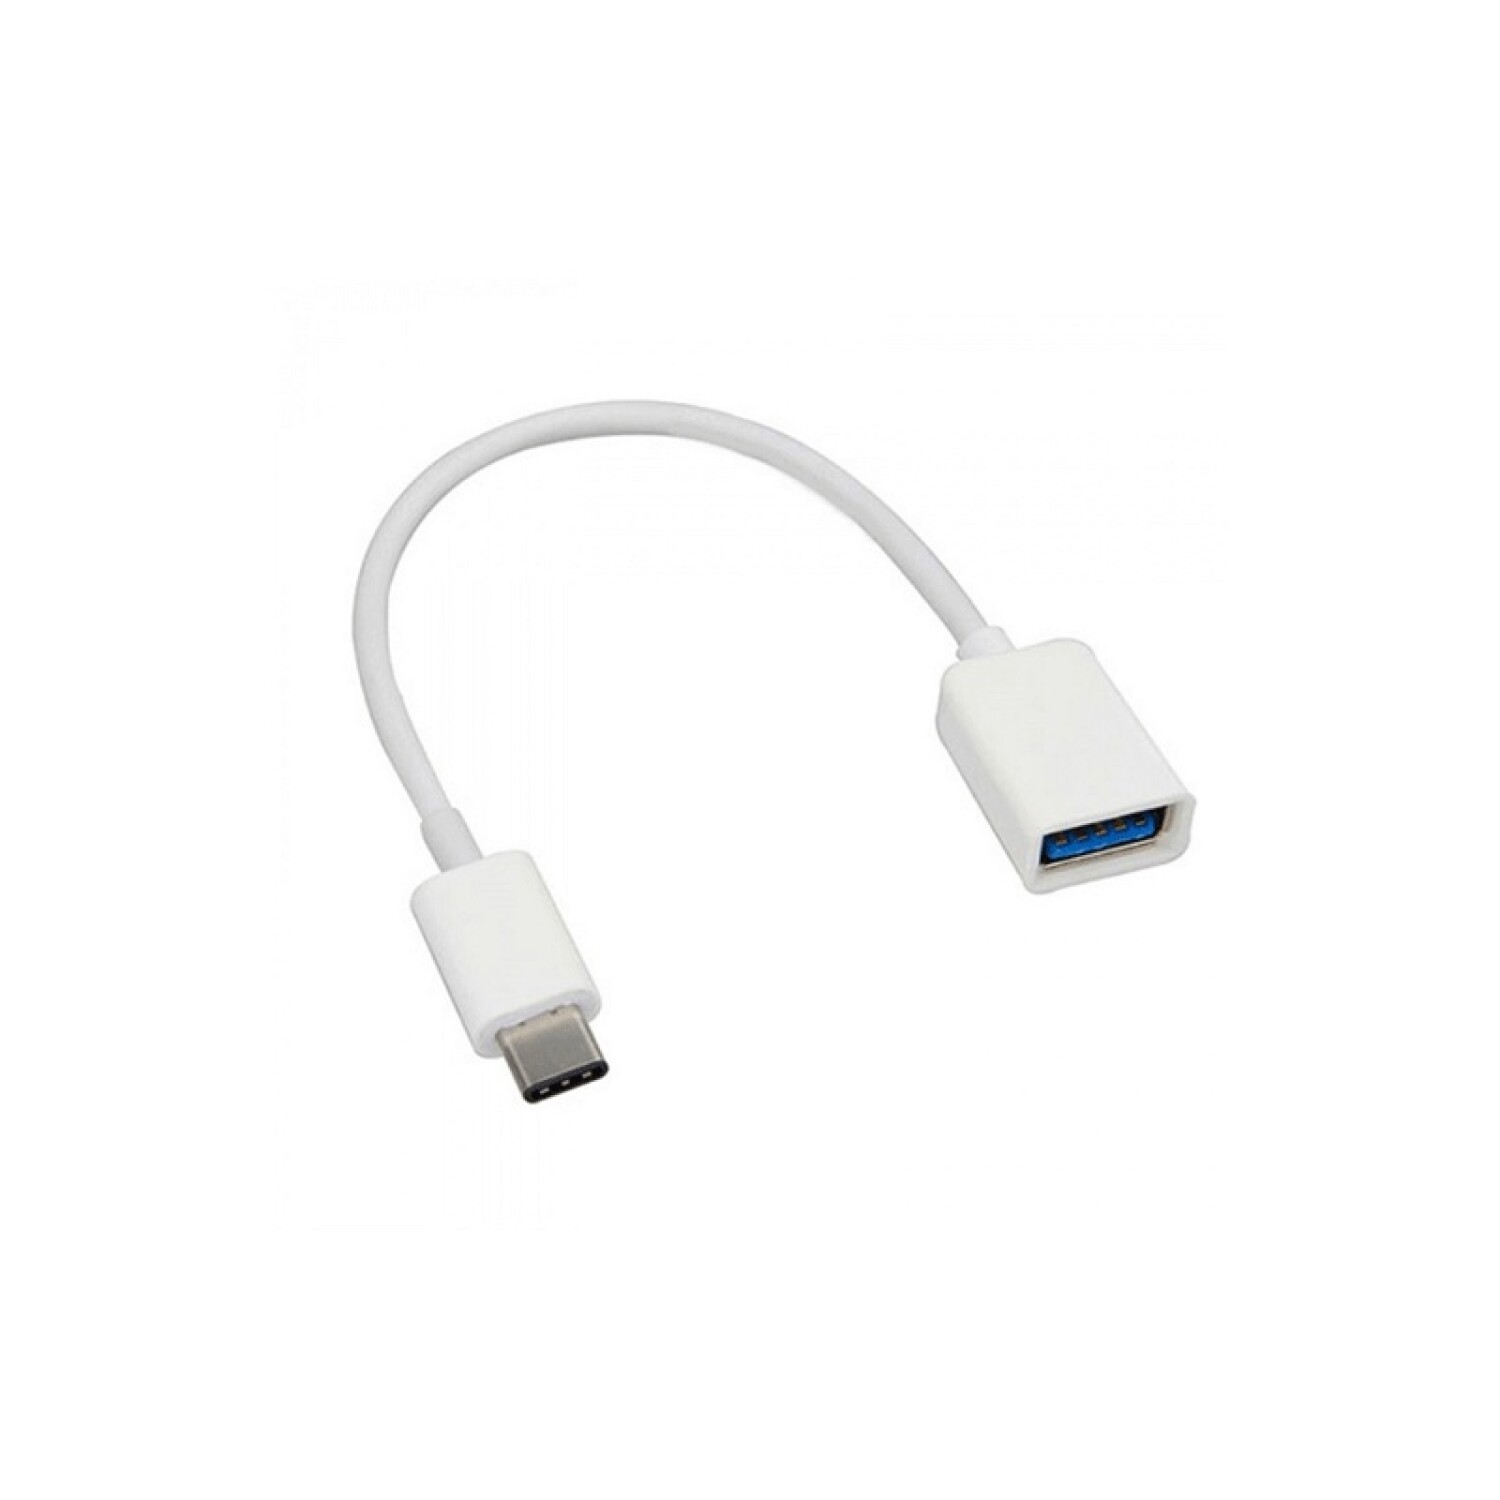 cable OTG Adaptador USB Tipo-c a USB A 3.0 (F) - Intelcomp Honduras